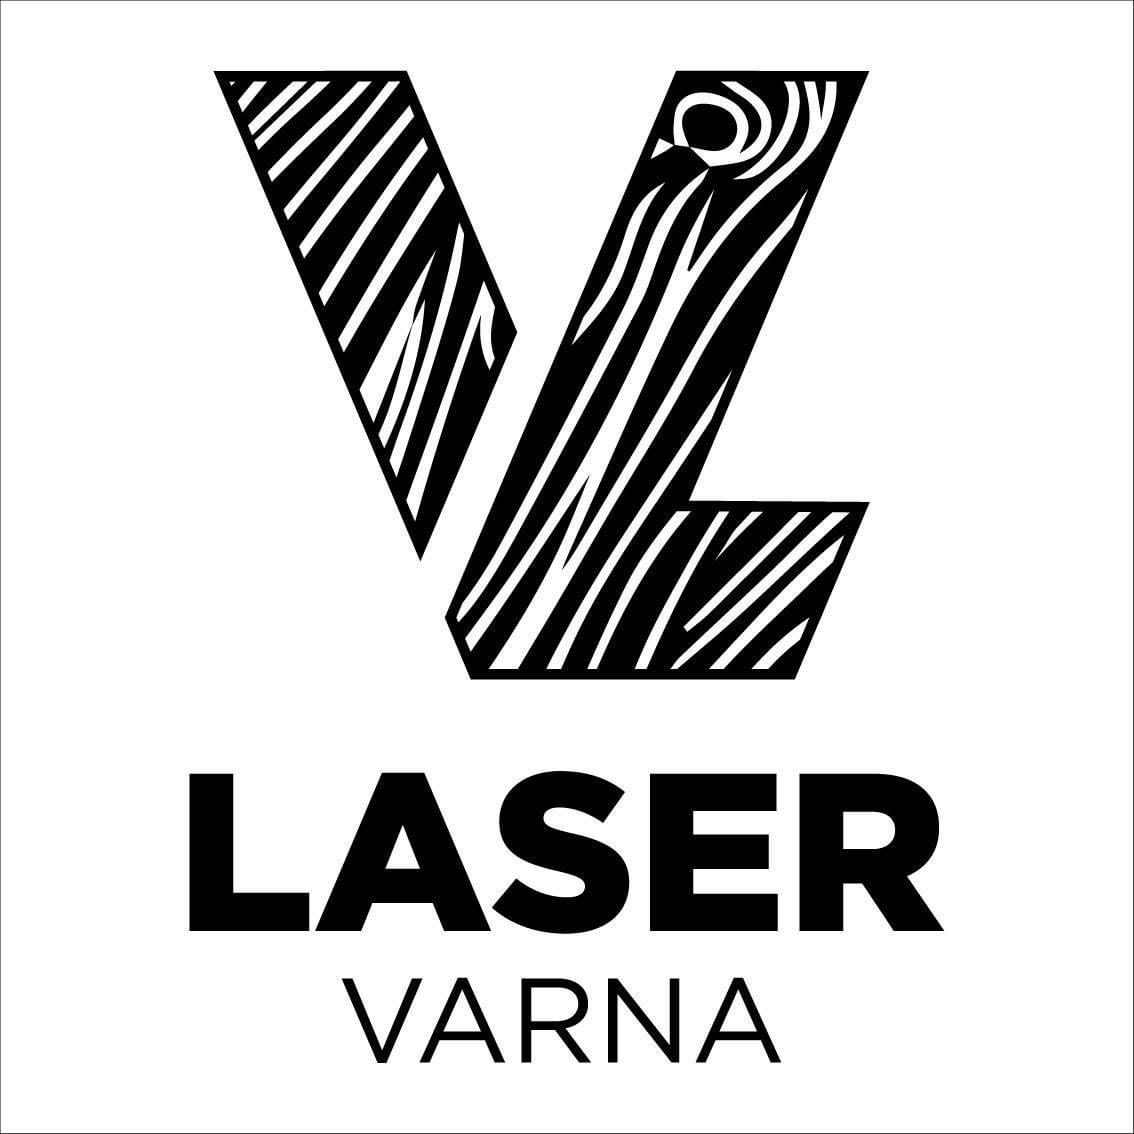 LaserVarna